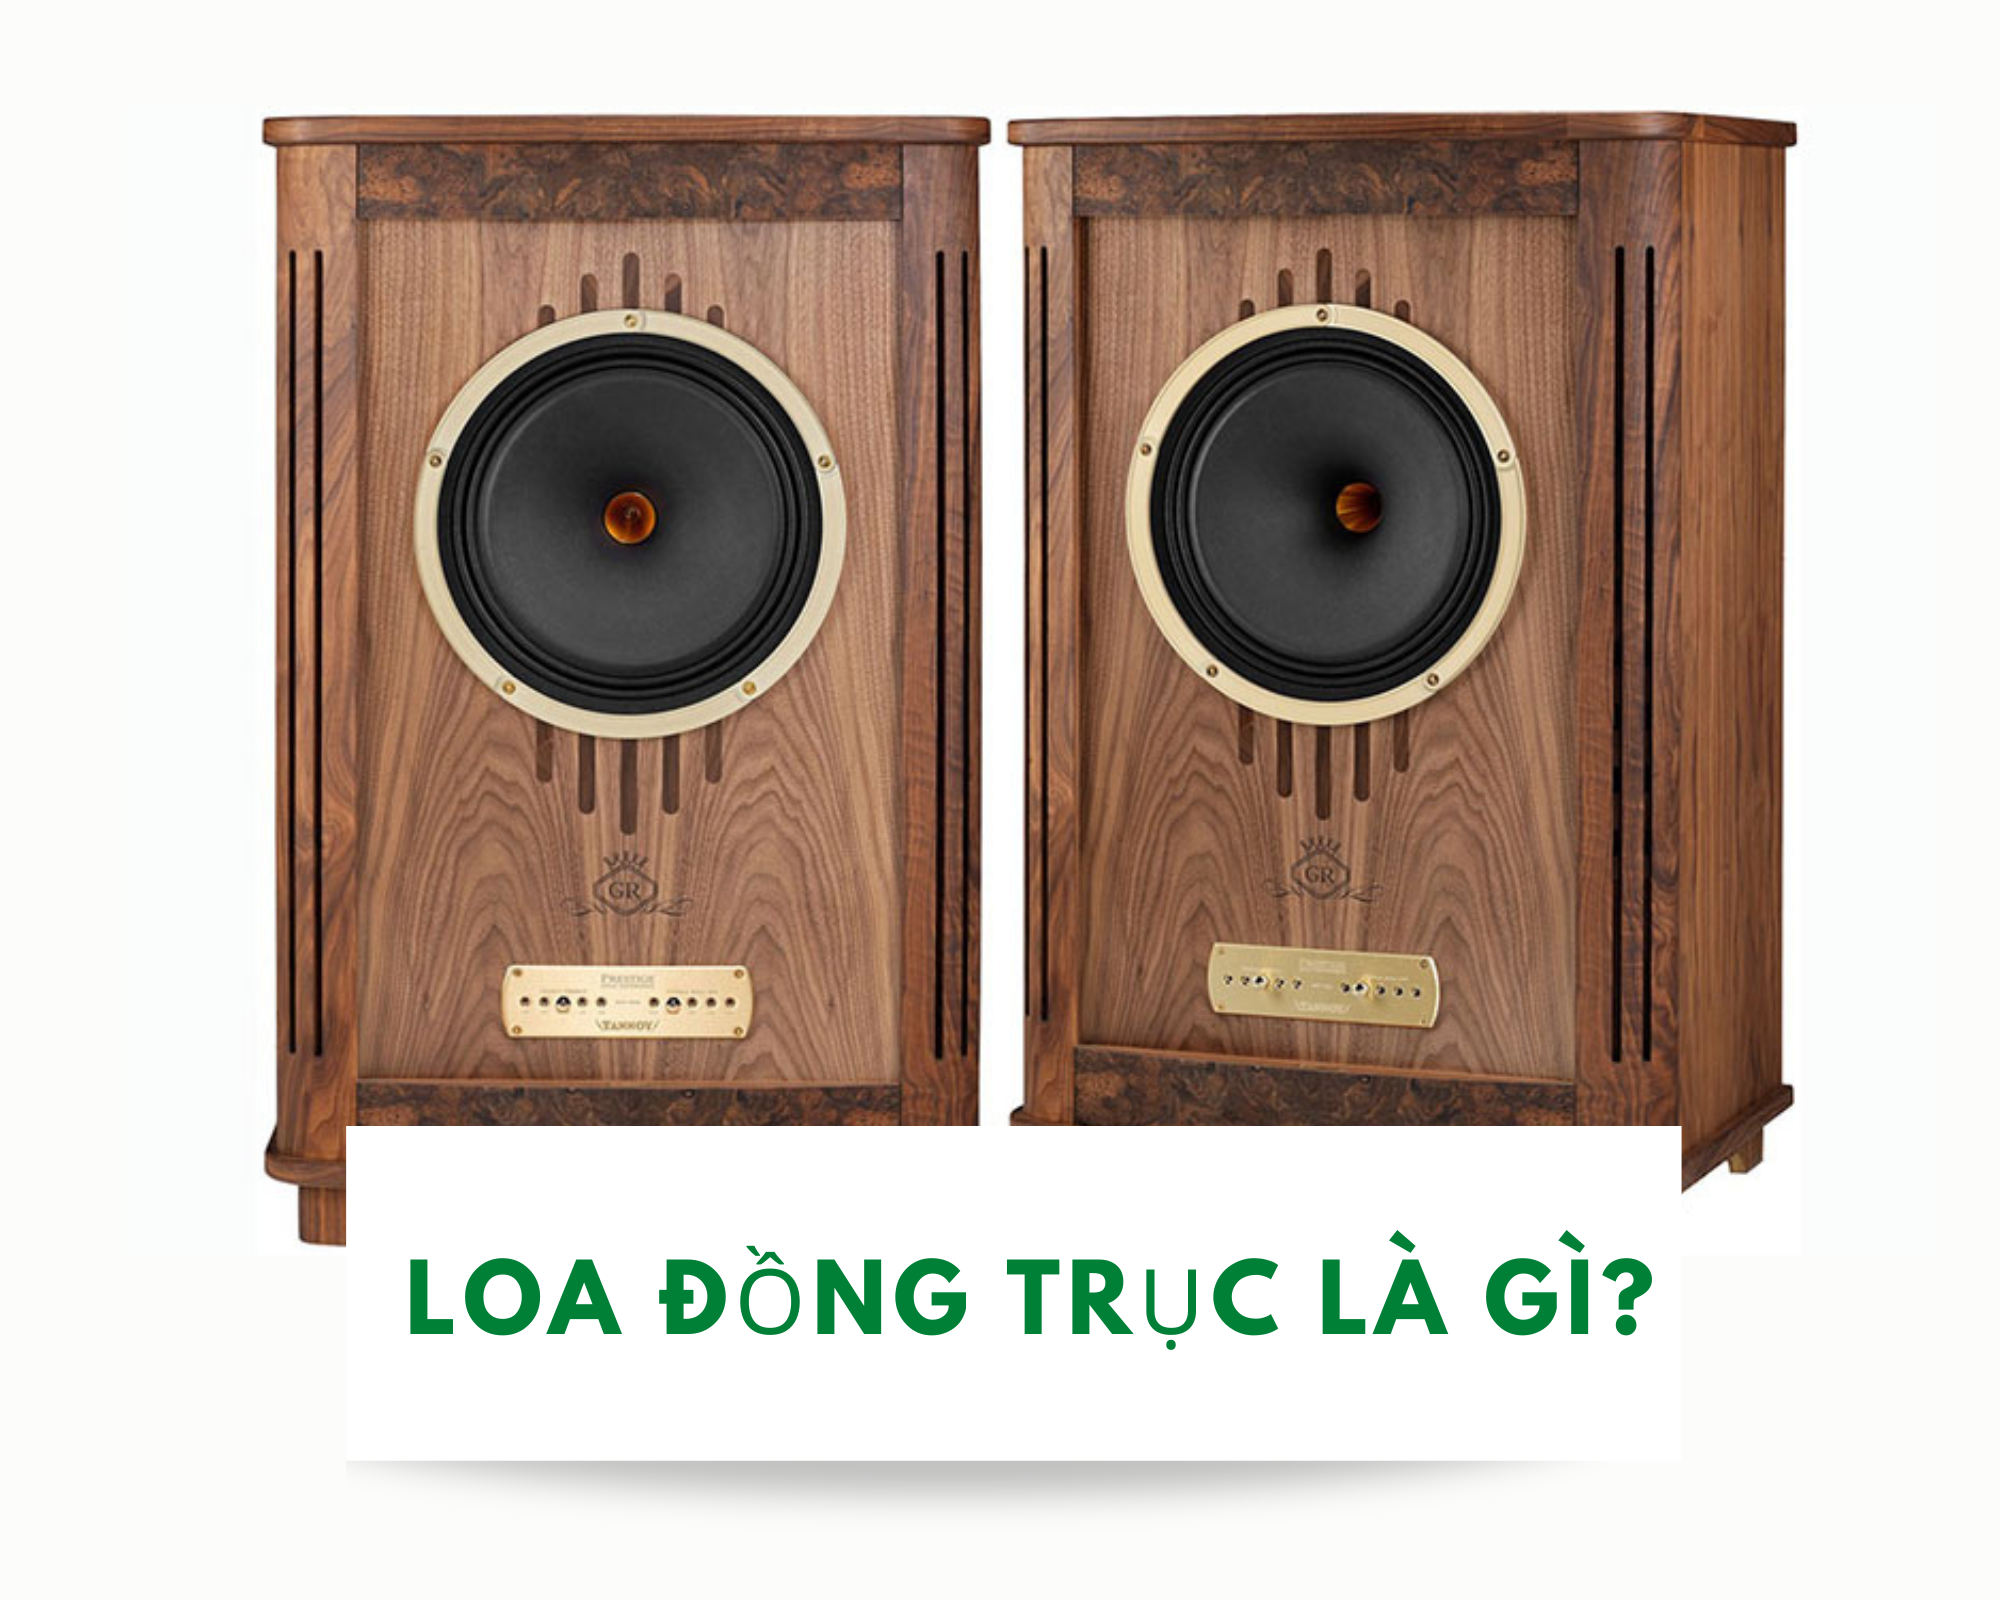 Loa-dong-truc-la-gi